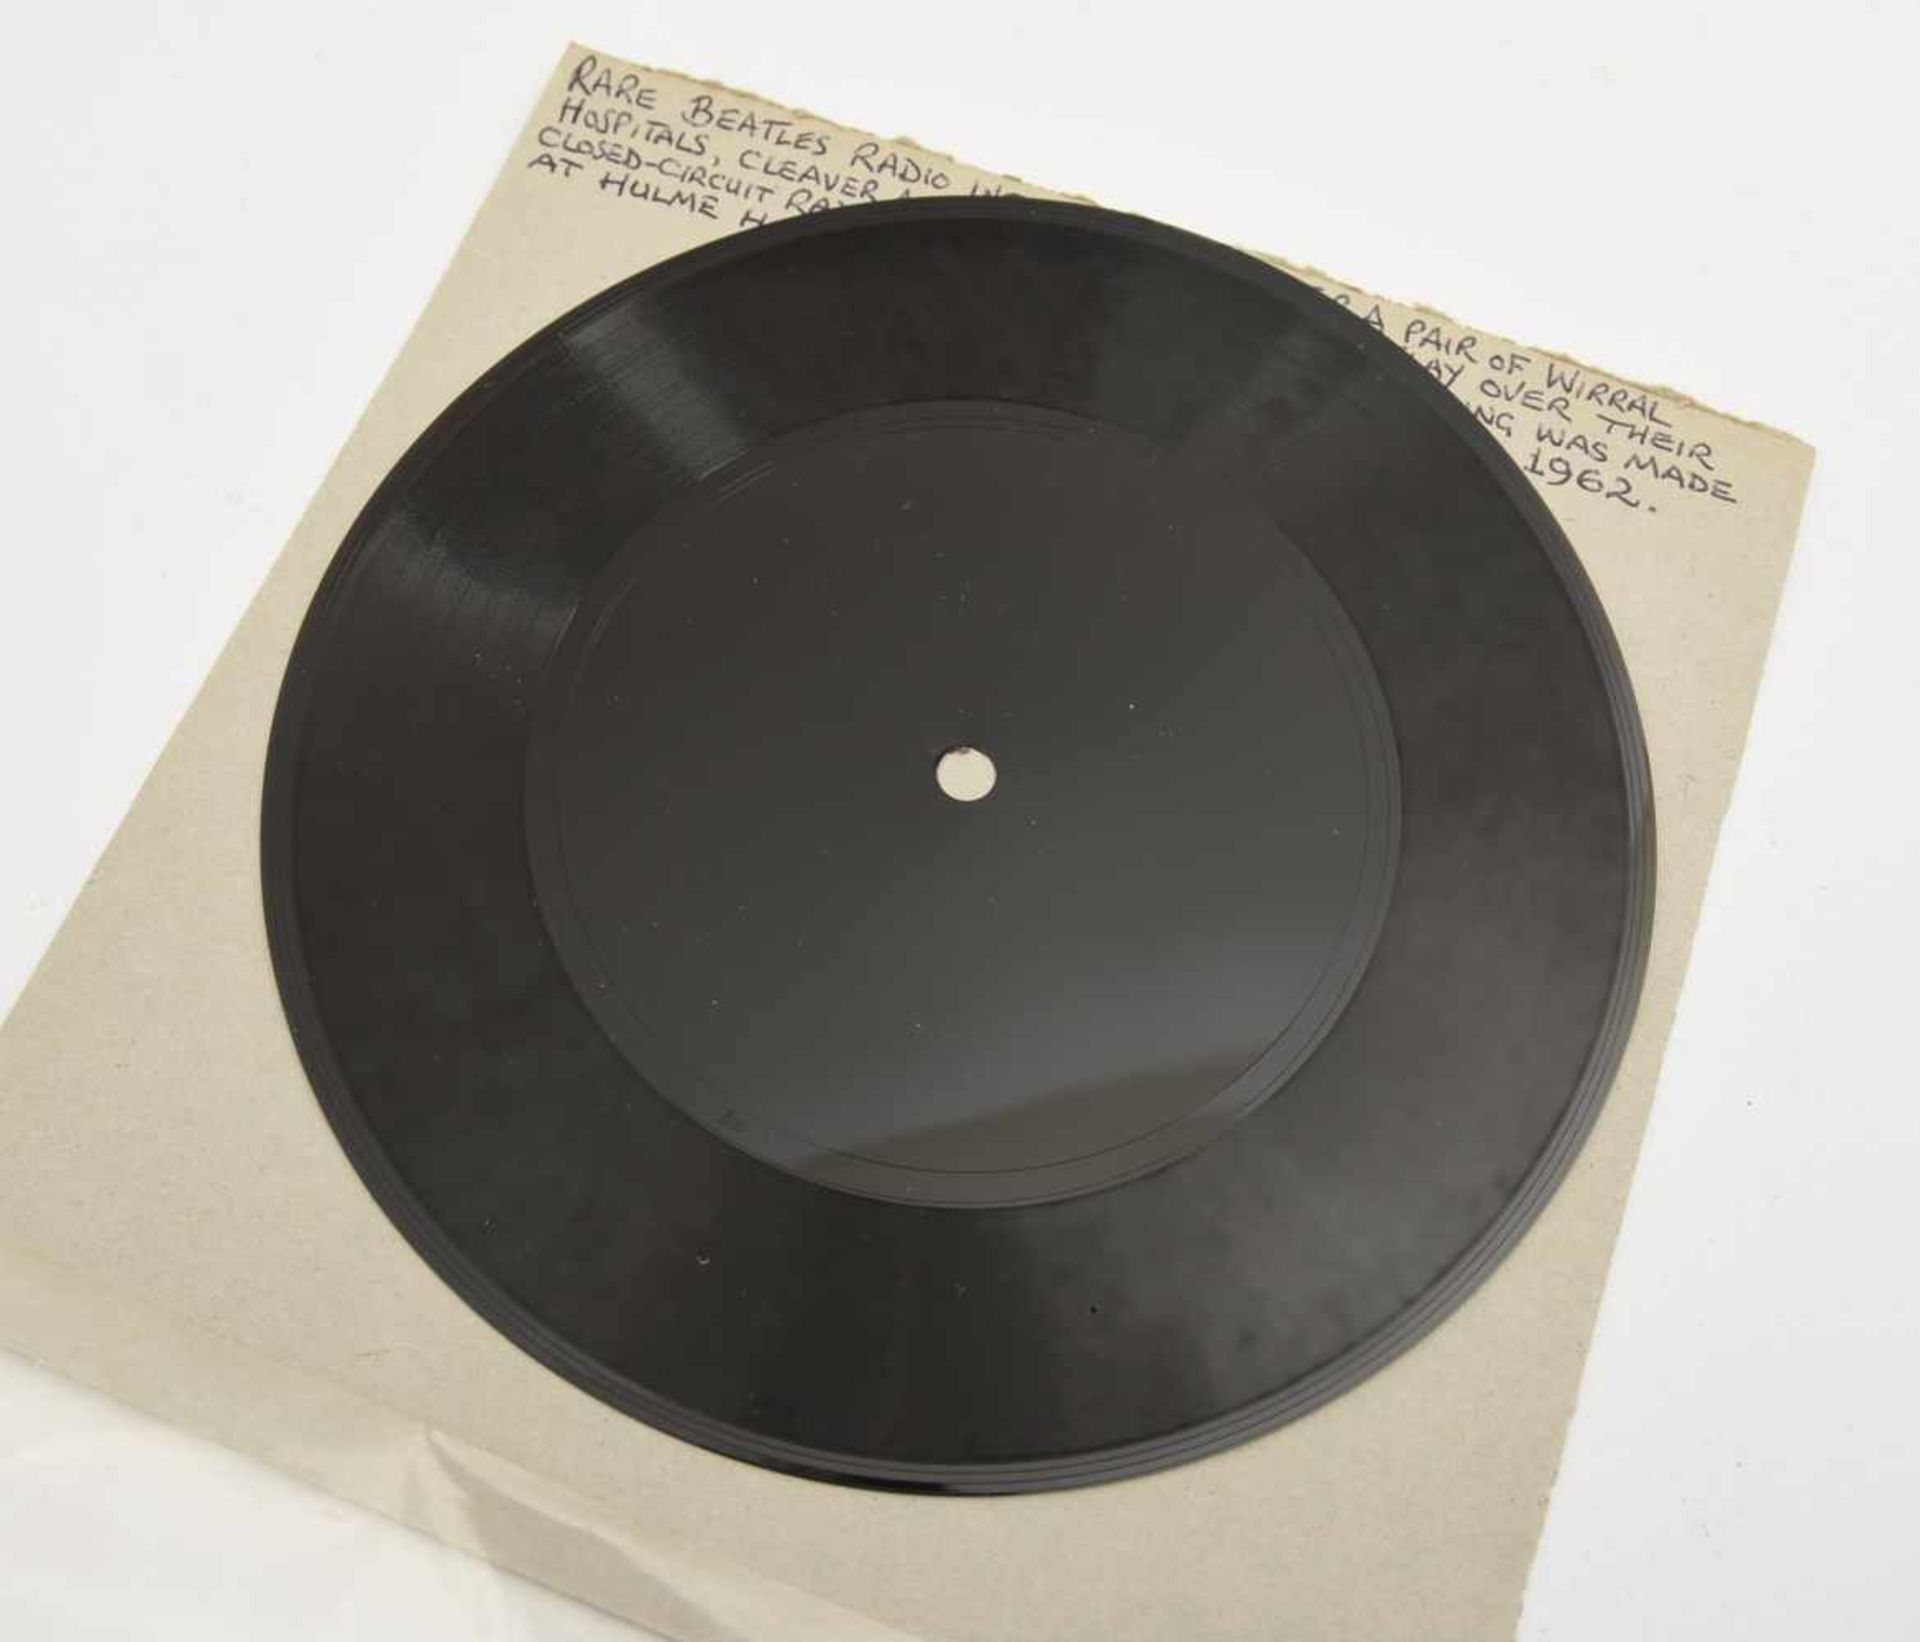 THE BEATLES- RARE INTERVIEW: schwarze Flexi-Disc, UK 1962 Ein im Jahre 1962 aufgenommenes seltenes - Bild 3 aus 3